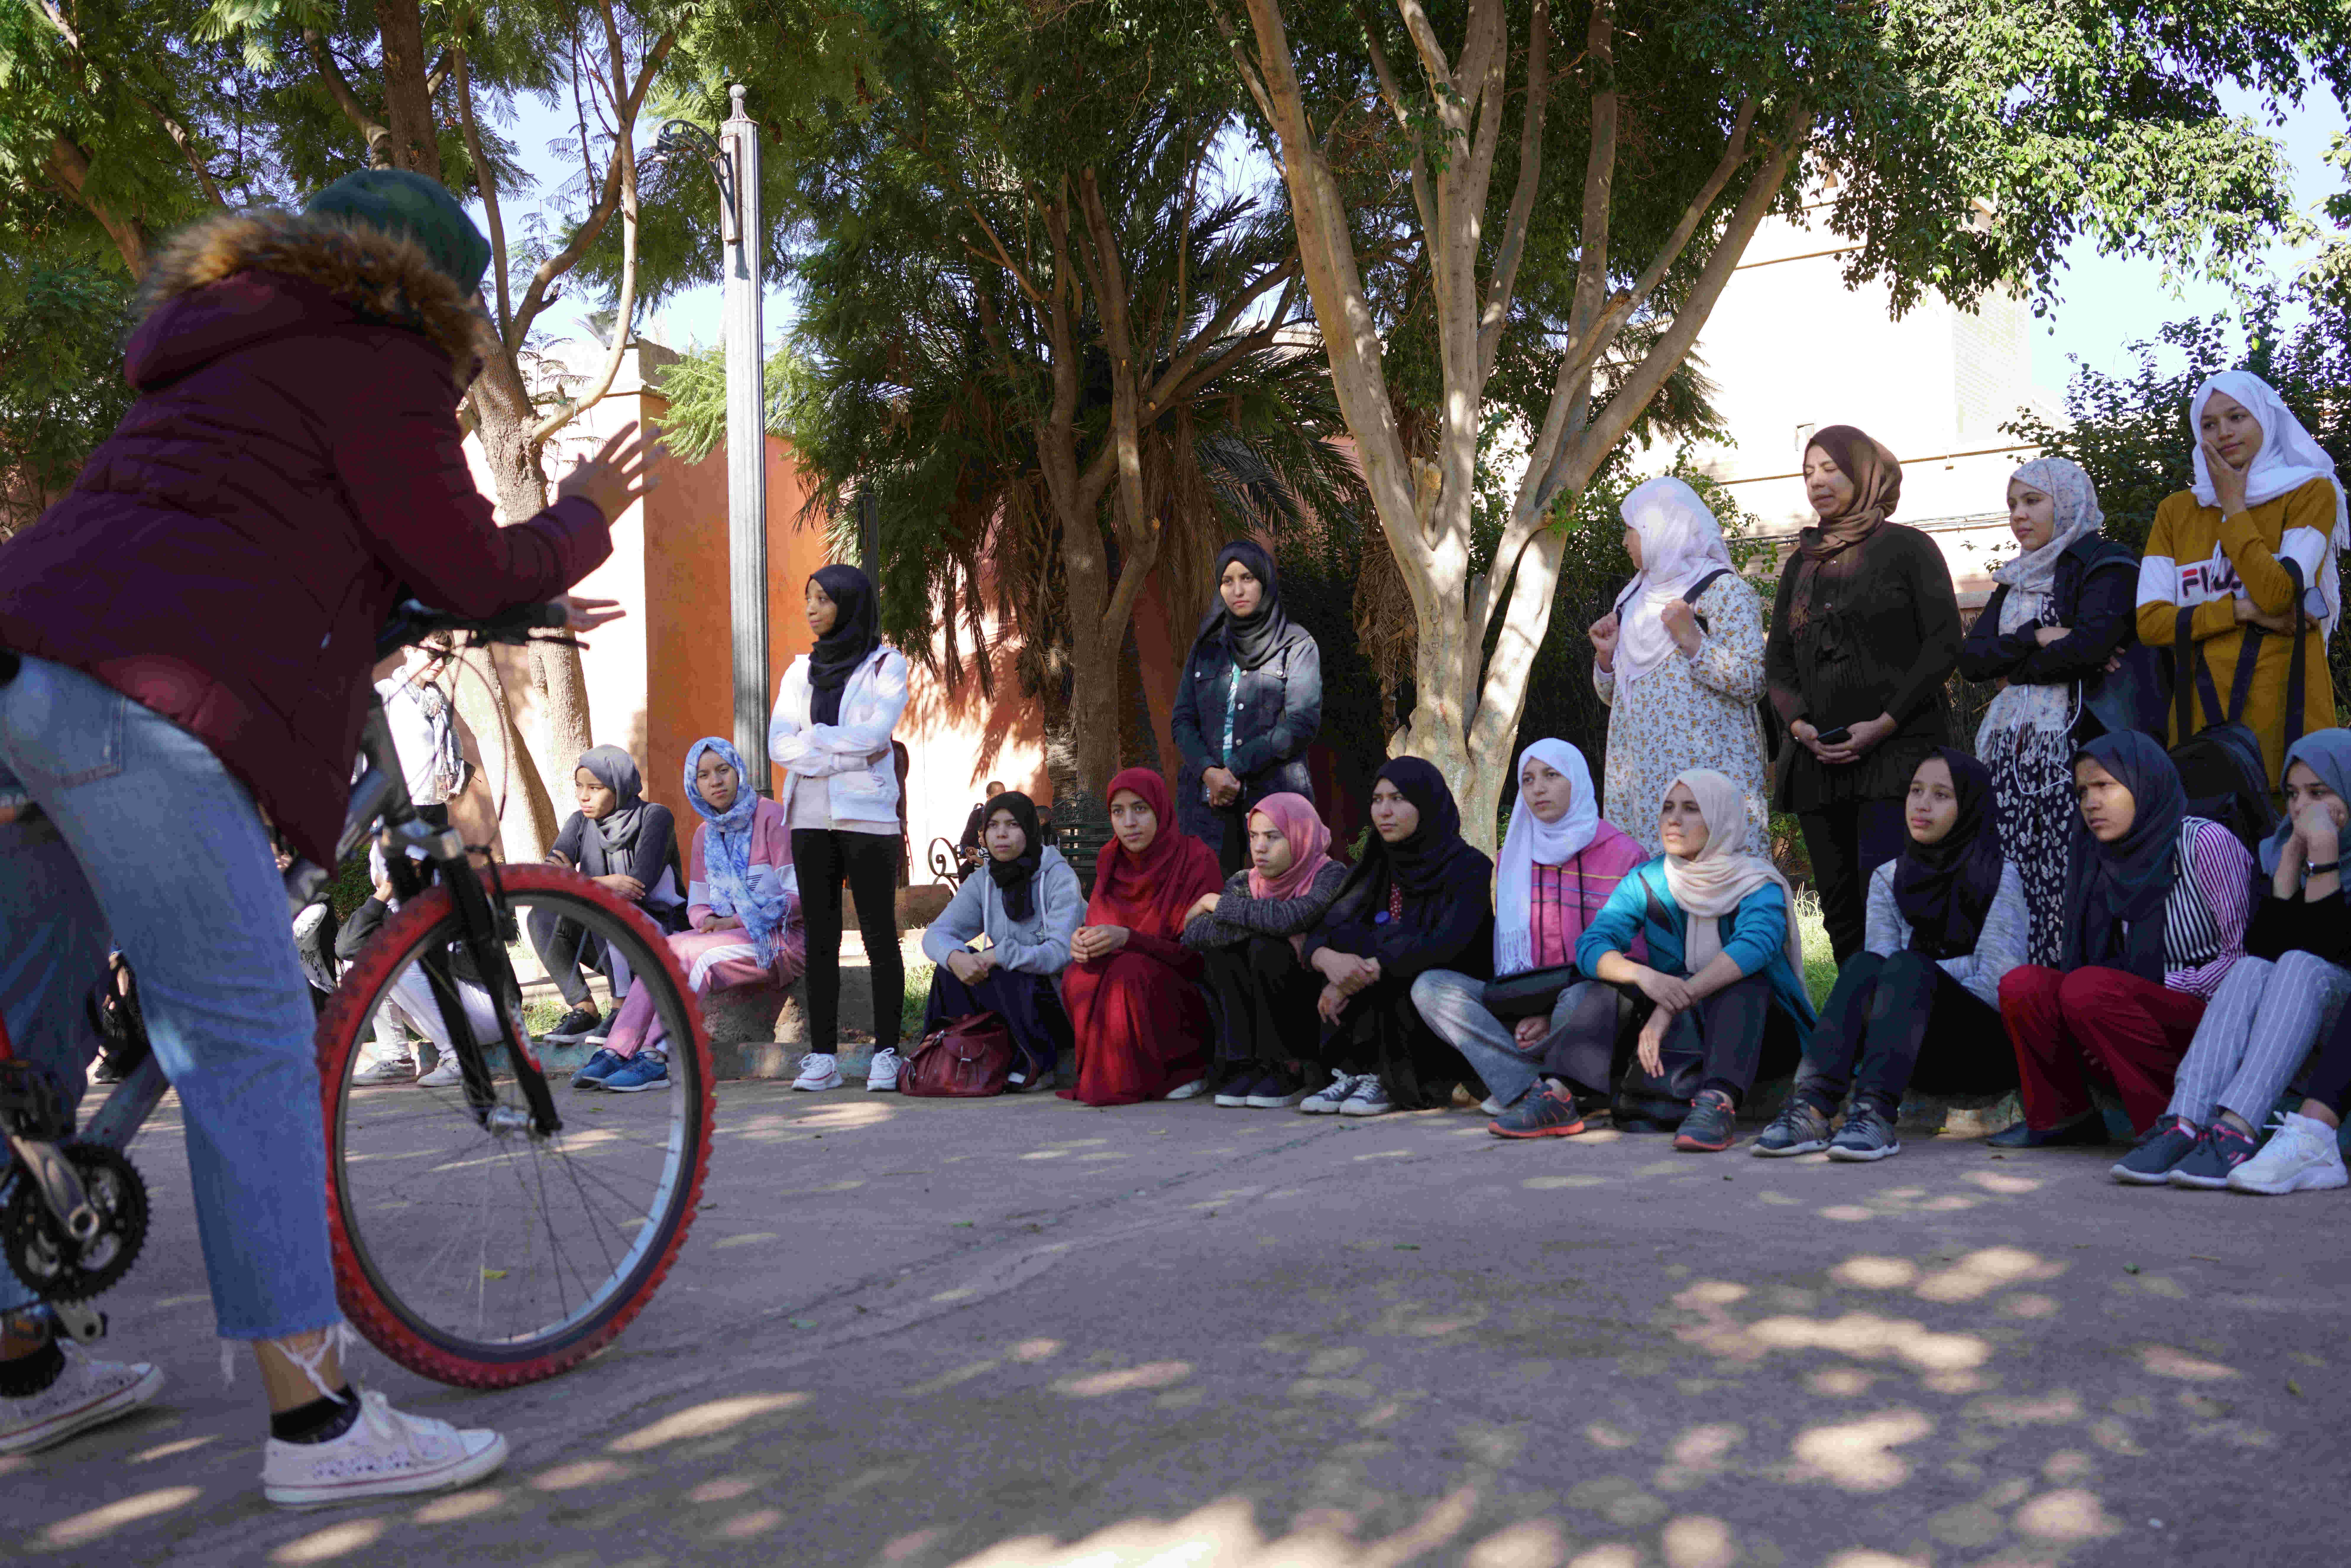 ثقافة جديدة لركوب الدراجات في المغرب - خولة الهيدي (على اليسار فوق الدراجة) تعلم الشابات المغربيات كيفية ركوب الدراجة الهوائية خلال مبادرة بيكالا. Khaoula El Haidi teaches young women to ride a bicycle, Pikala Bikes, Marrakech, Morocco (photo: Marian Brehmer)